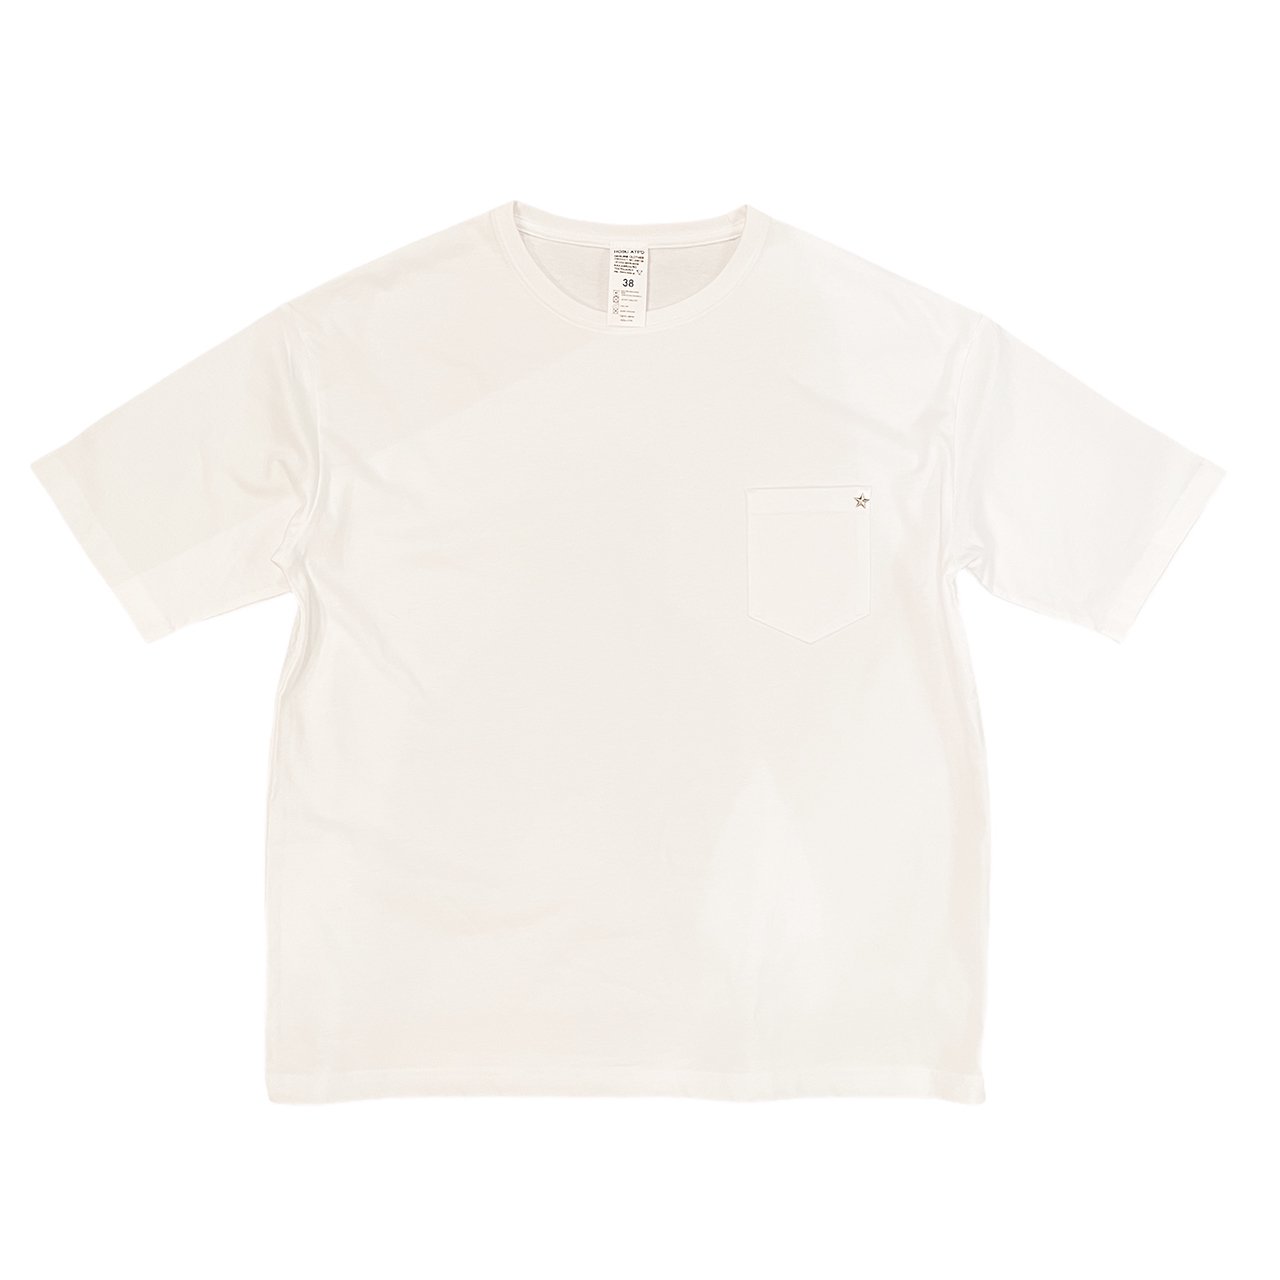 HOSU 星スタッズワイドポケットTシャツ (ホワイト)